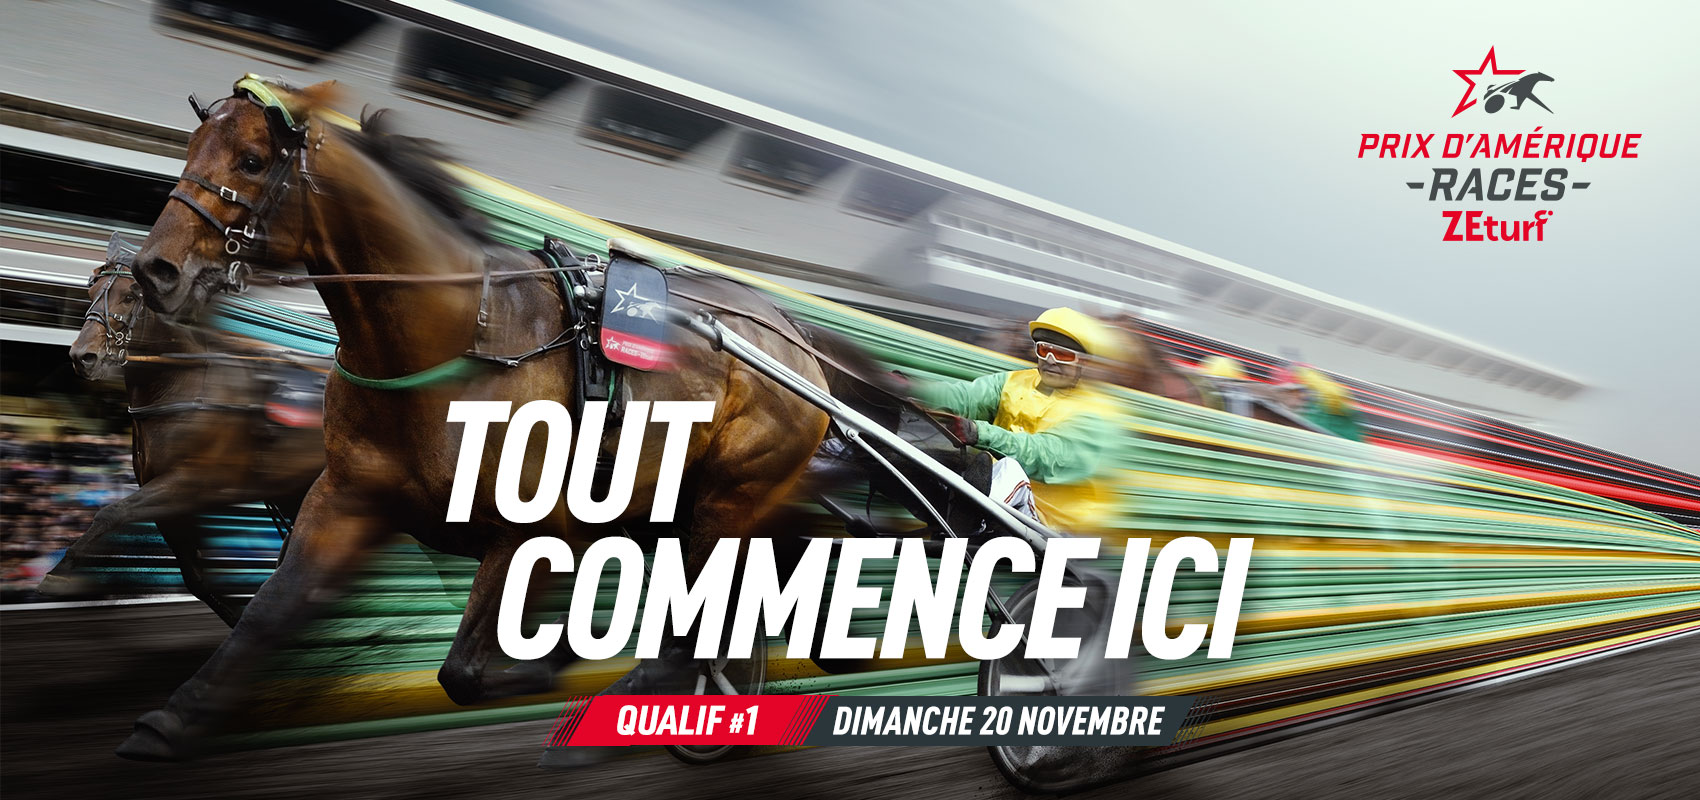 La bande annonce du Prix d’Amérique Races ZEturf Qualif 1 – Prix de Bretagne